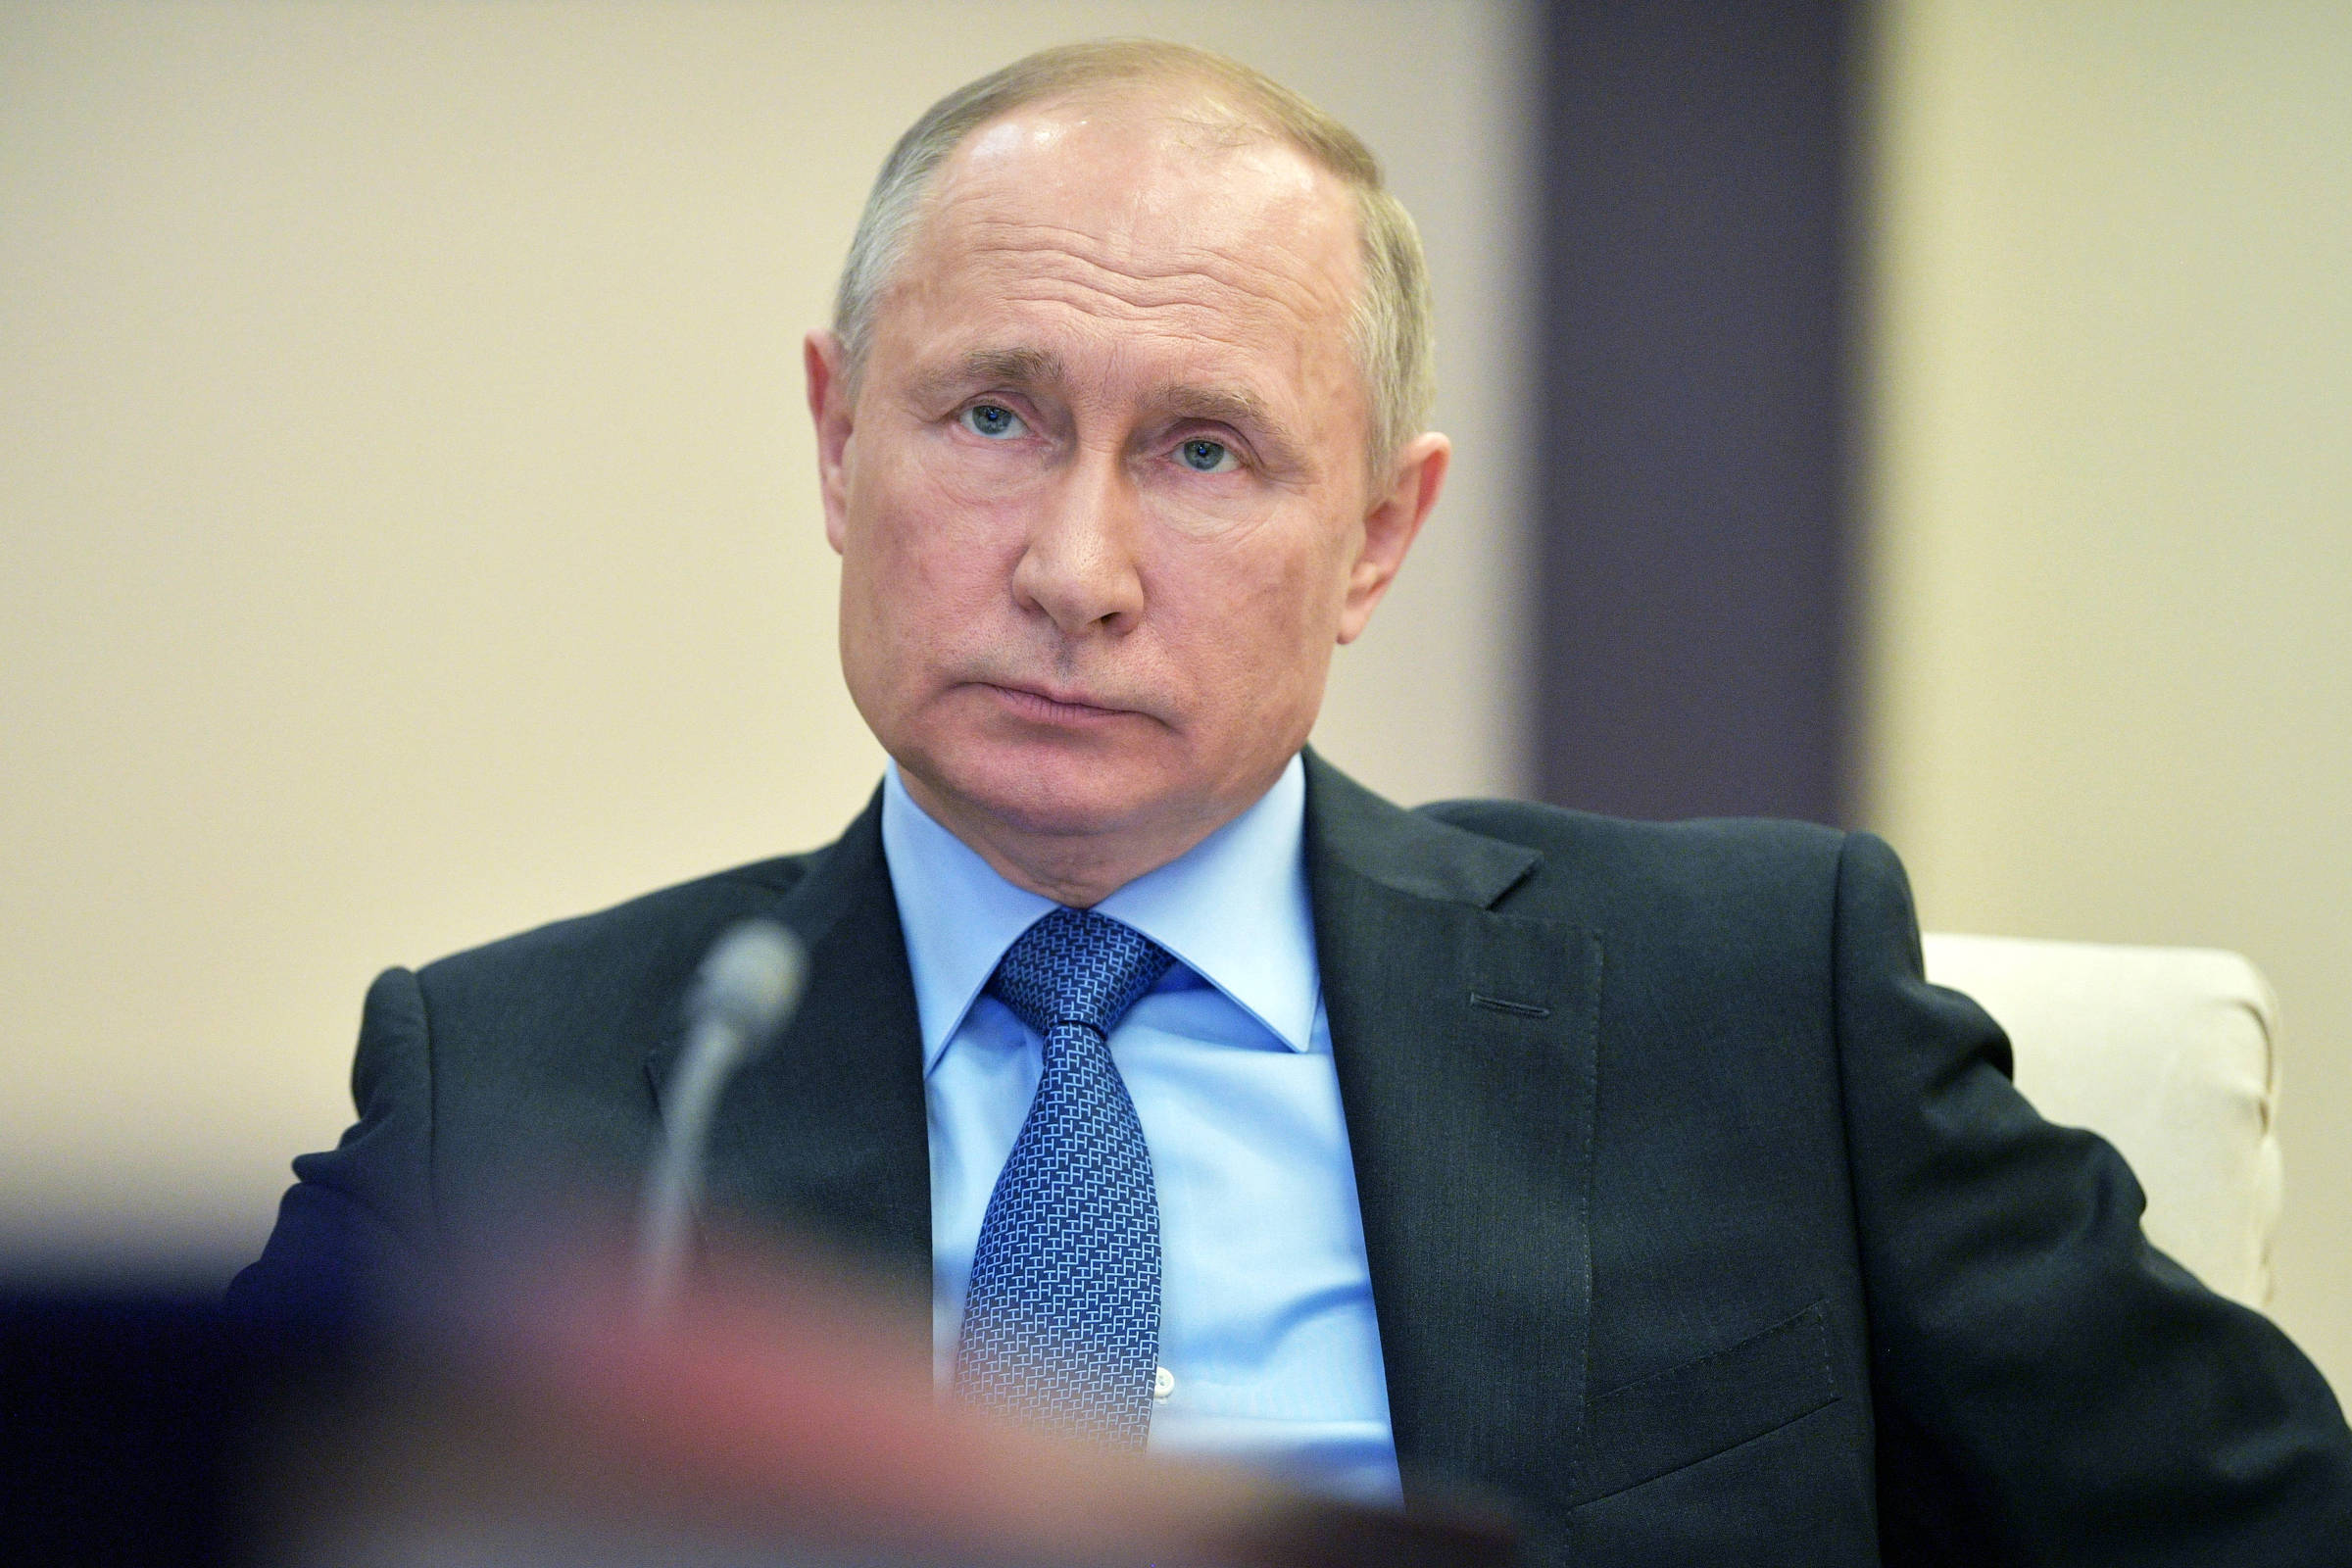 Putin usa imprensa russa para espalhar fake news sobre suposta